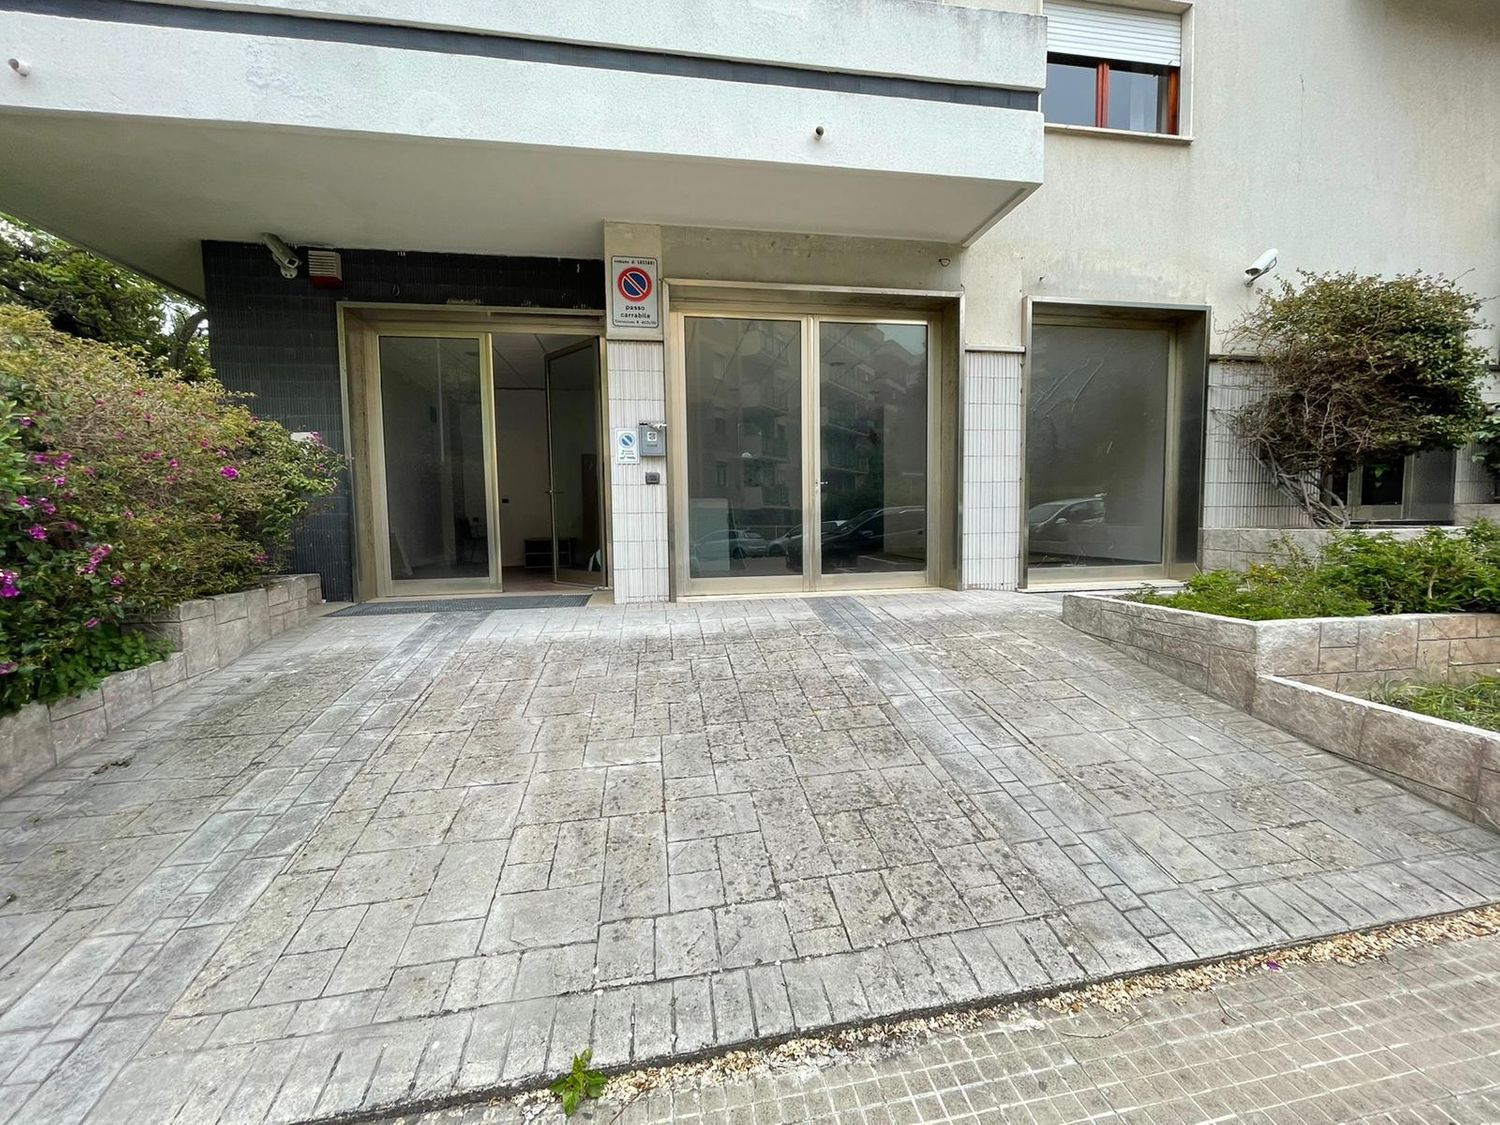 Immobile Commerciale in affitto a Sassari, 9999 locali, prezzo € 2.000 | CambioCasa.it